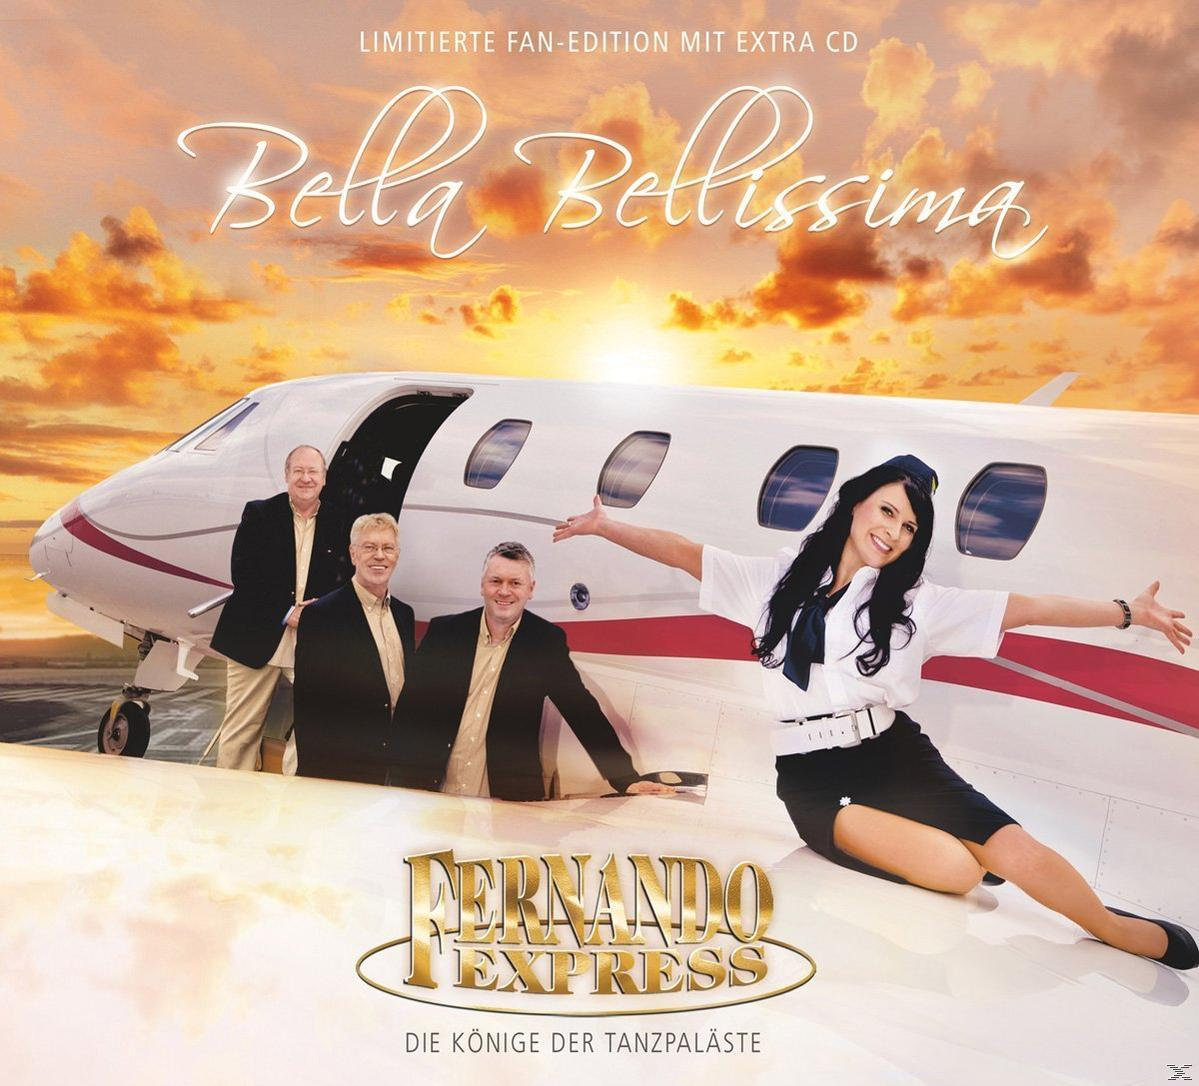 Edition) Bellissima - - Fan Bella (CD) Express Fernando (Limited